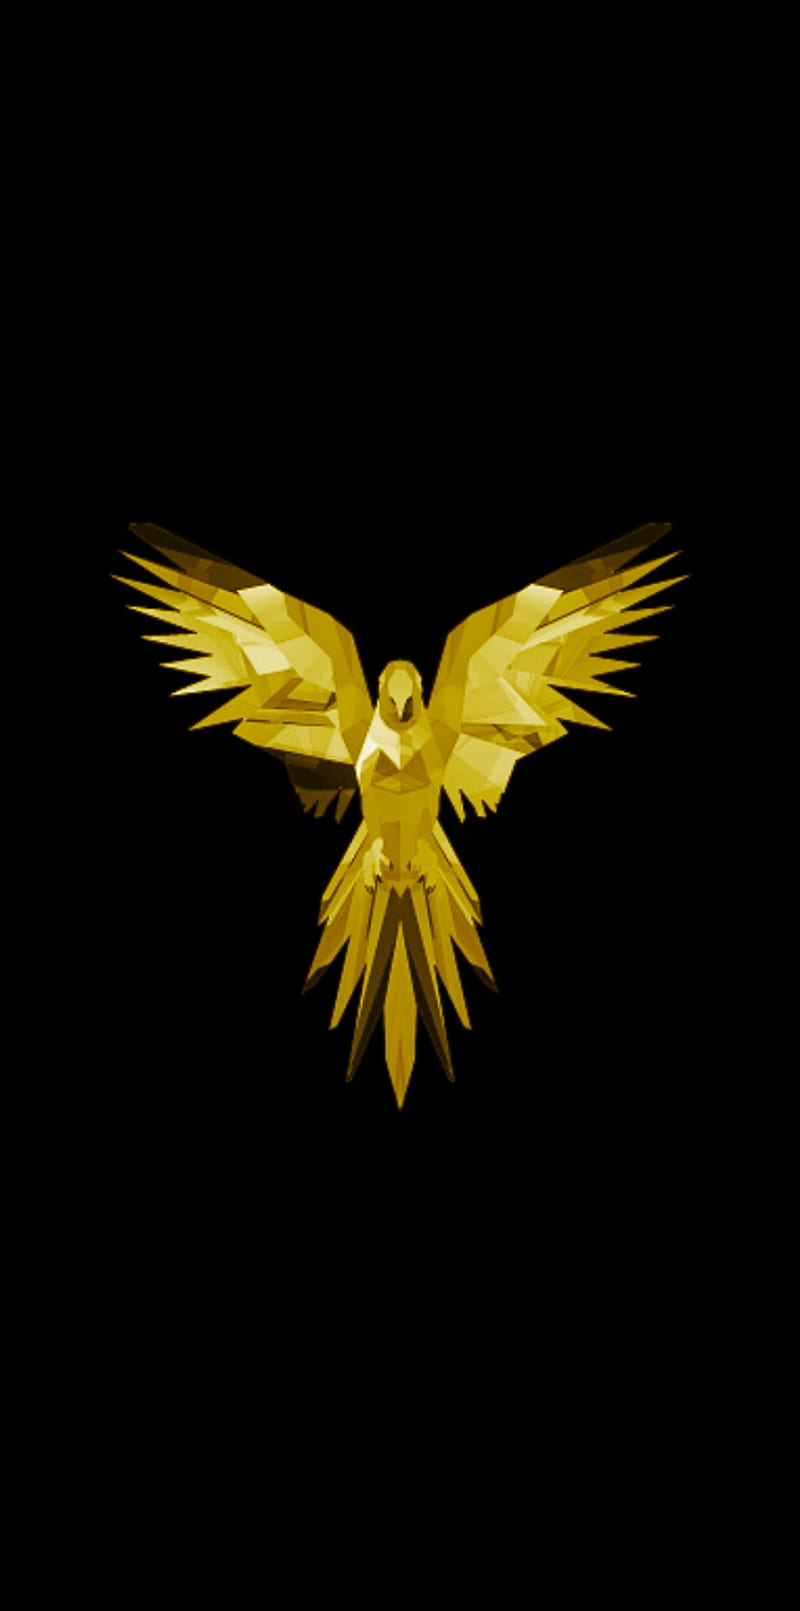 Golden bird, bird, golden, eagle, amoled, HD phone wallpaper